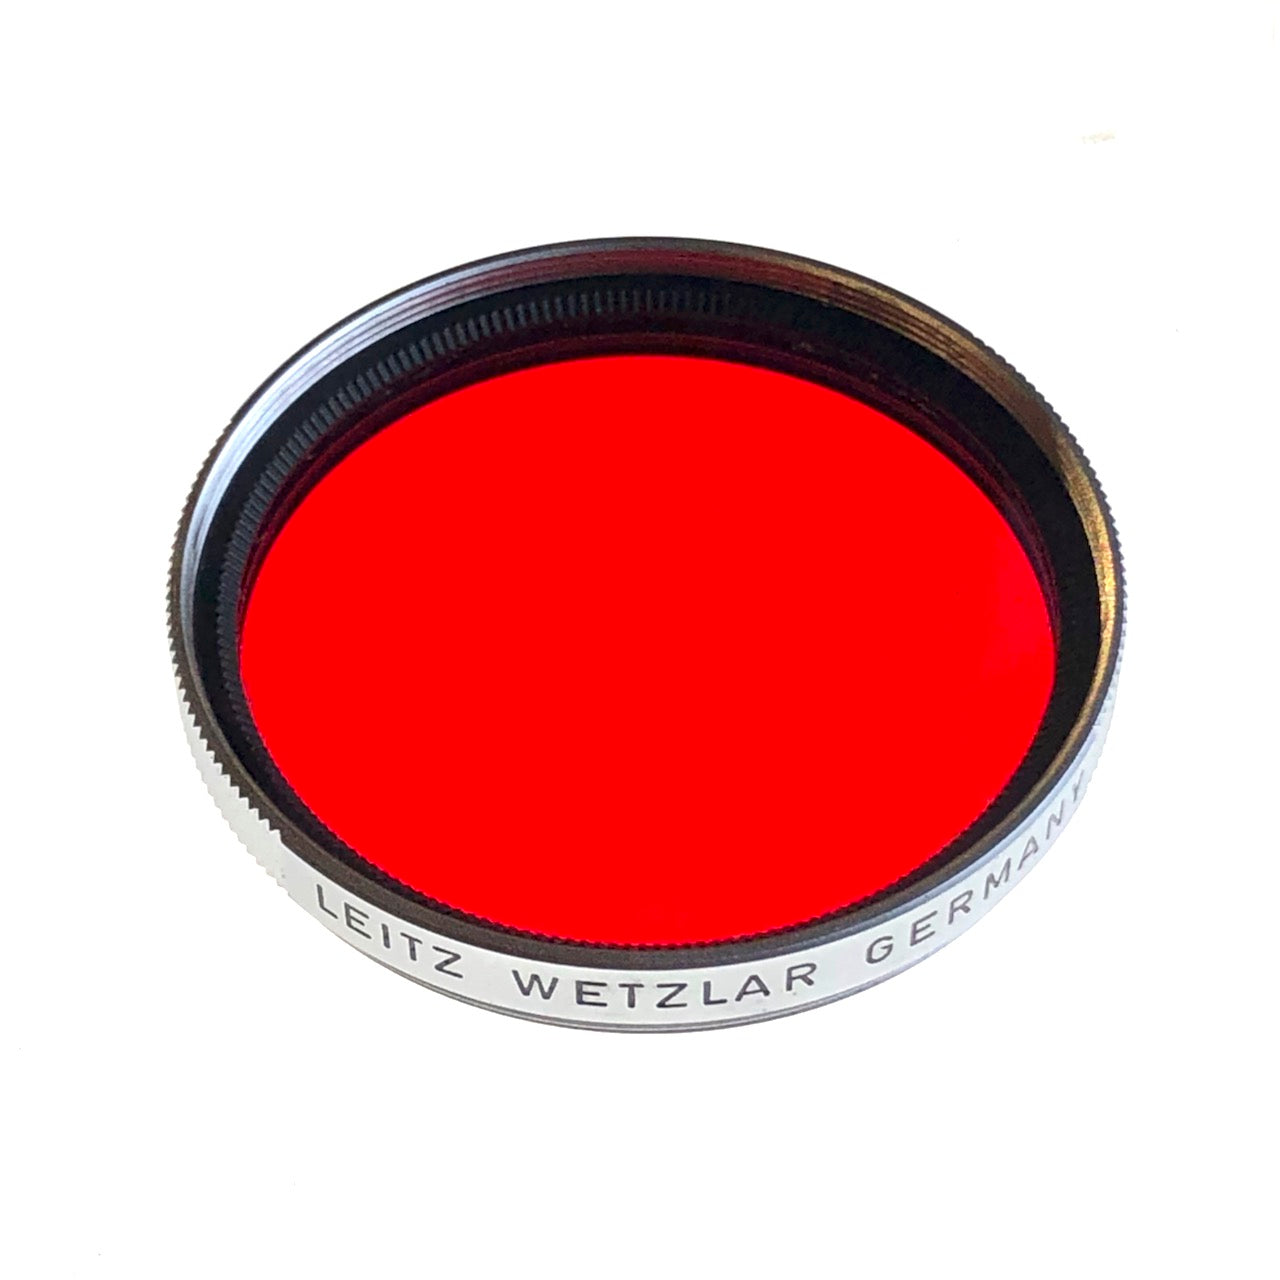 Leitz 13116B red filter.